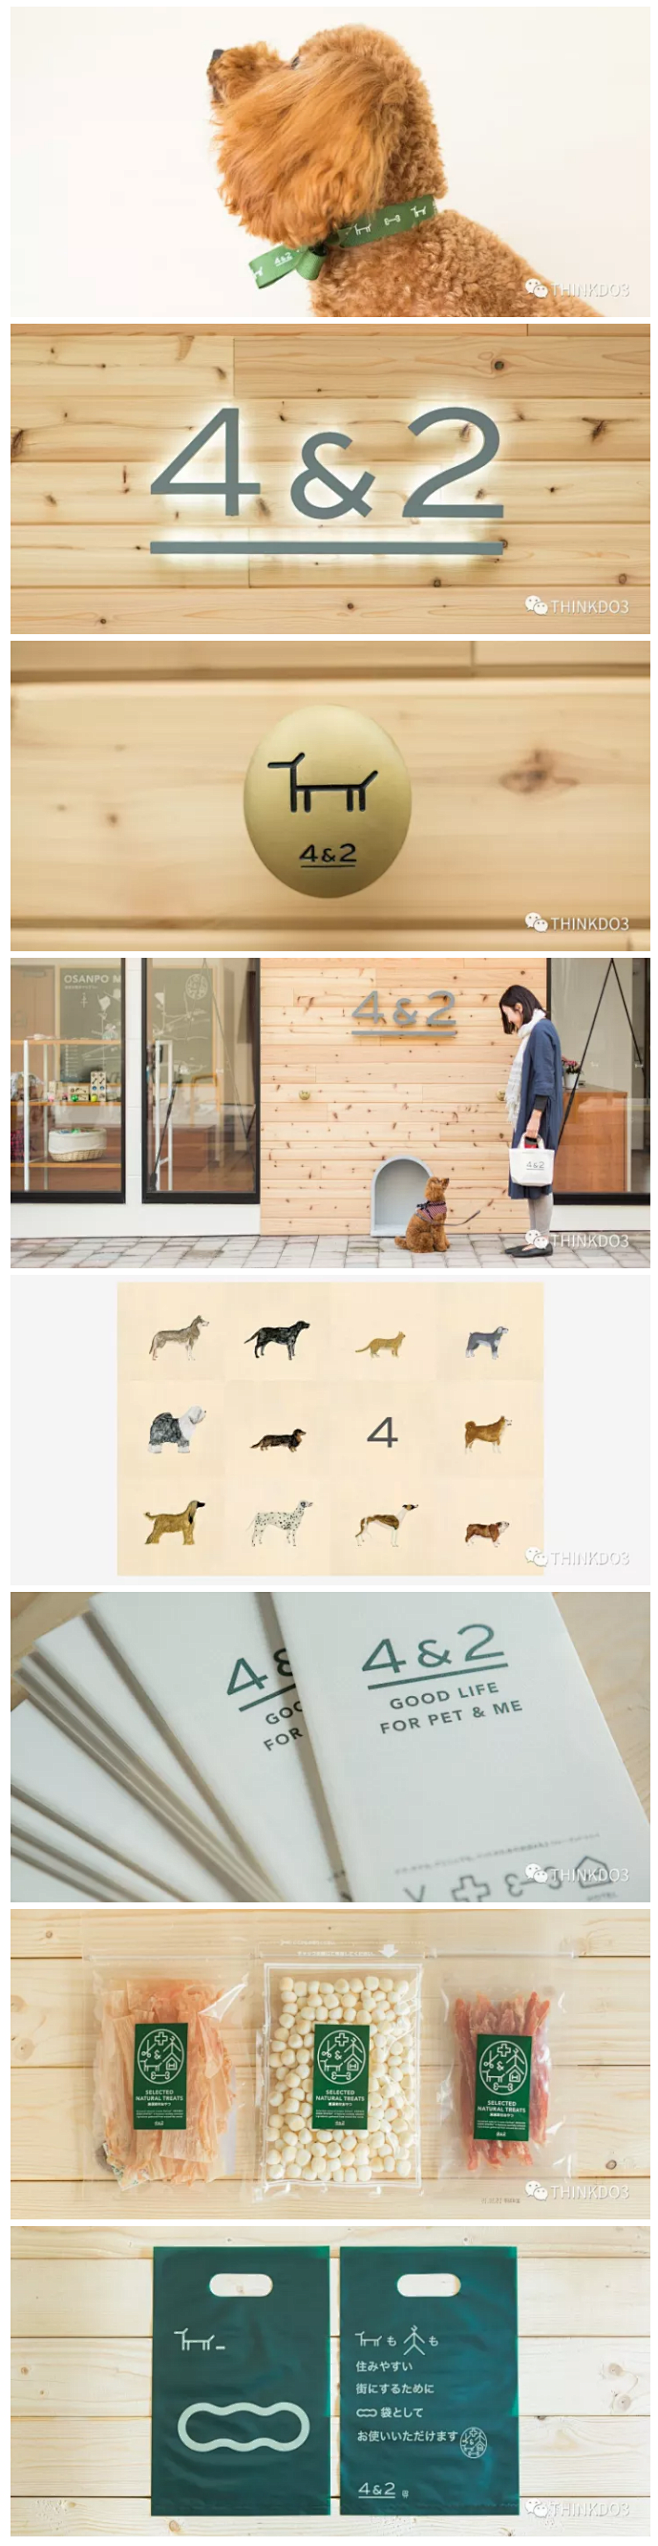 【4＆2 宠物护理店品牌VI系统设计】
...